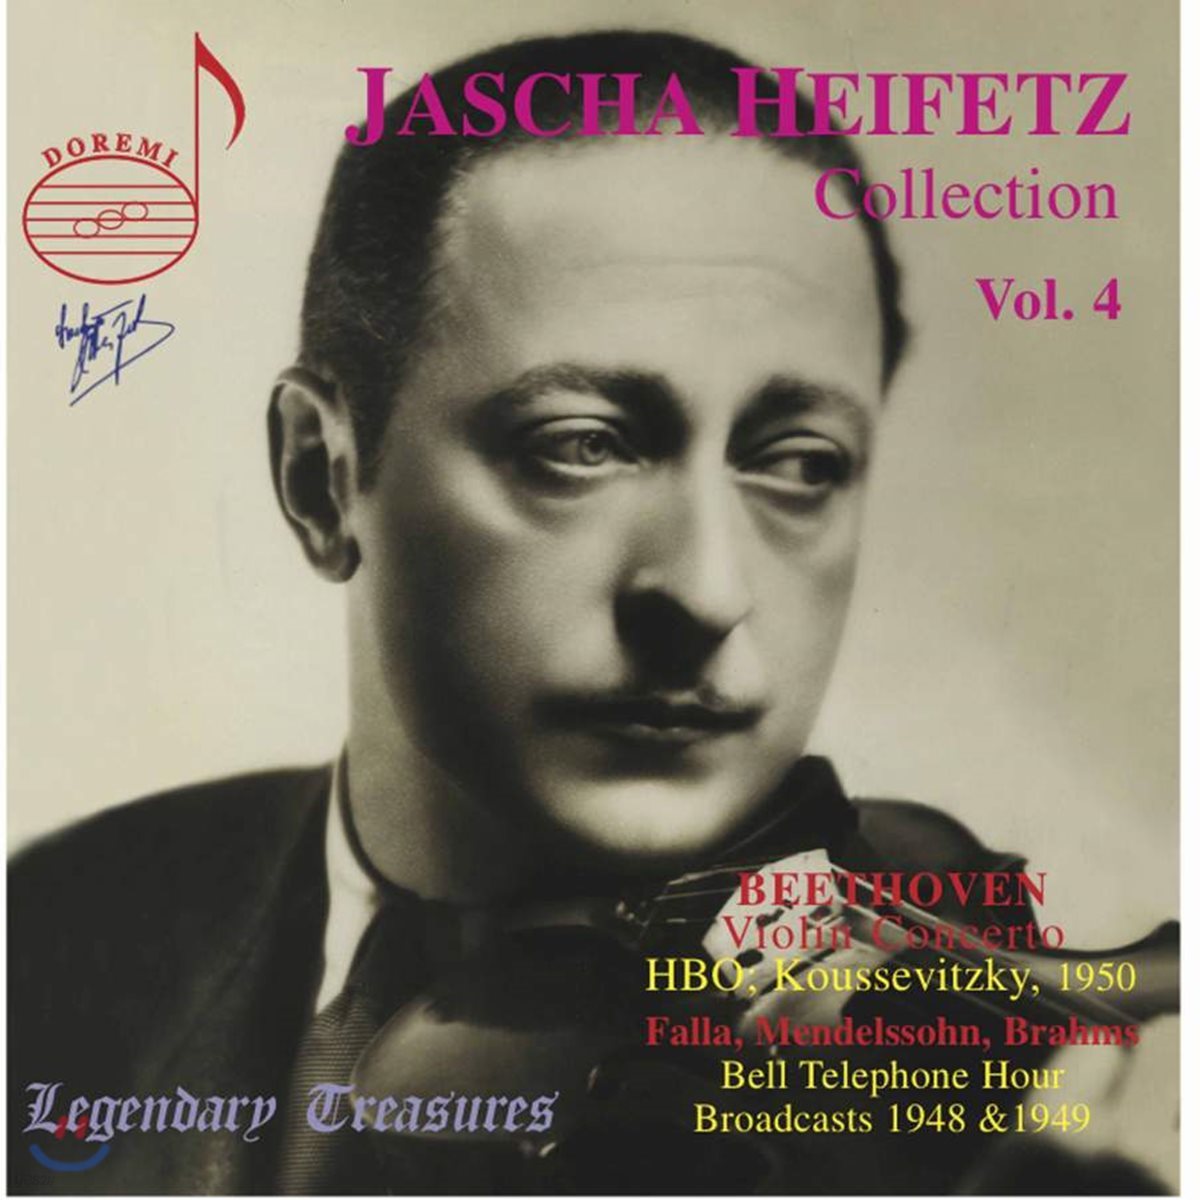 하이페츠 컬렉션 4집 (Jascha Heifetz Collection Vol. 4)